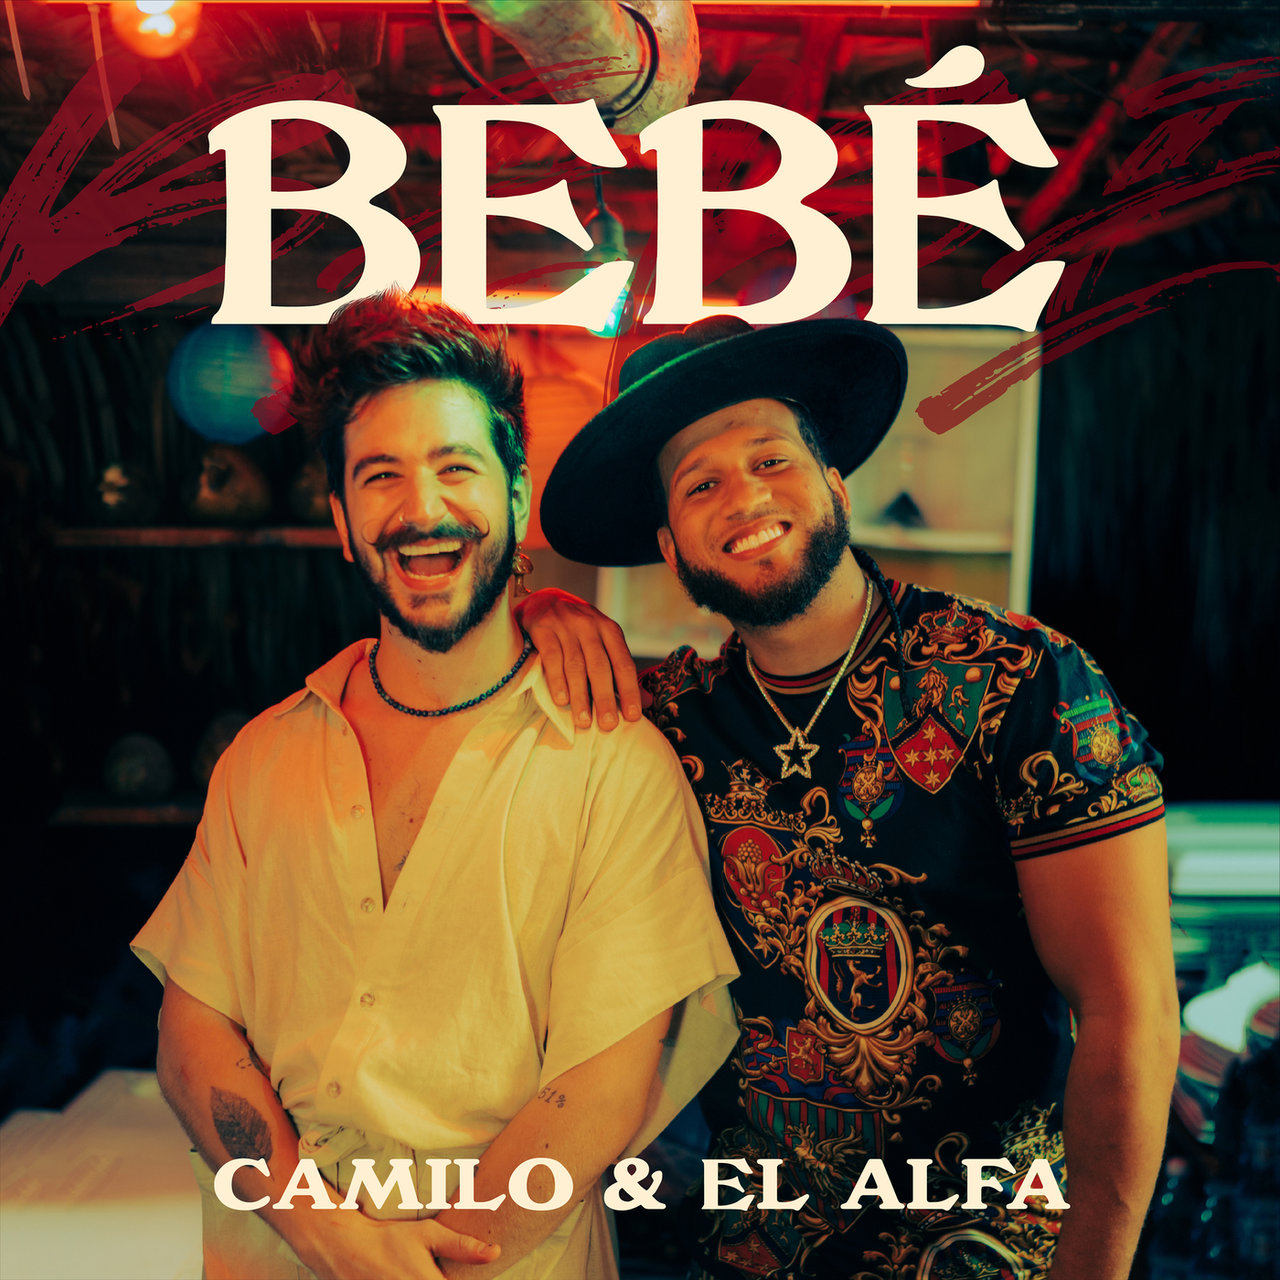 Camilo y El Alfa nos ponen a bailar bachata con ‘BEBÉ’